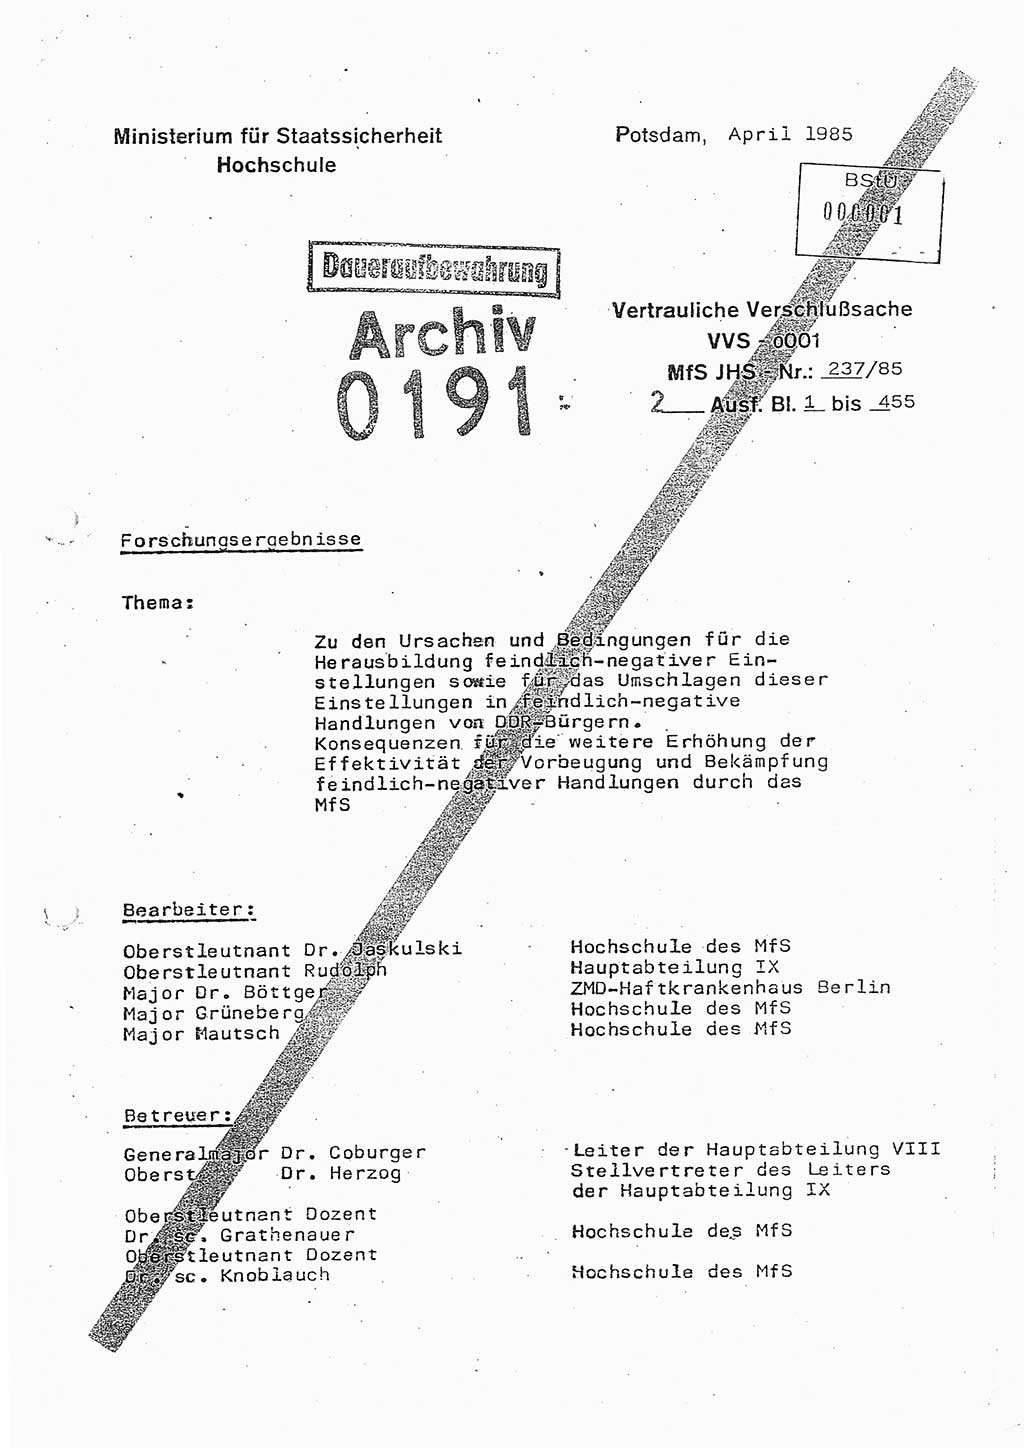 Dissertation Oberstleutnant Peter Jakulski (JHS), Oberstleutnat Christian Rudolph (HA Ⅸ), Major Horst Böttger (ZMD), Major Wolfgang Grüneberg (JHS), Major Albert Meutsch (JHS), Ministerium für Staatssicherheit (MfS) [Deutsche Demokratische Republik (DDR)], Juristische Hochschule (JHS), Vertrauliche Verschlußsache (VVS) o001-237/85, Potsdam 1985, Seite 1 (Diss. MfS DDR JHS VVS o001-237/85 1985, S. 1)